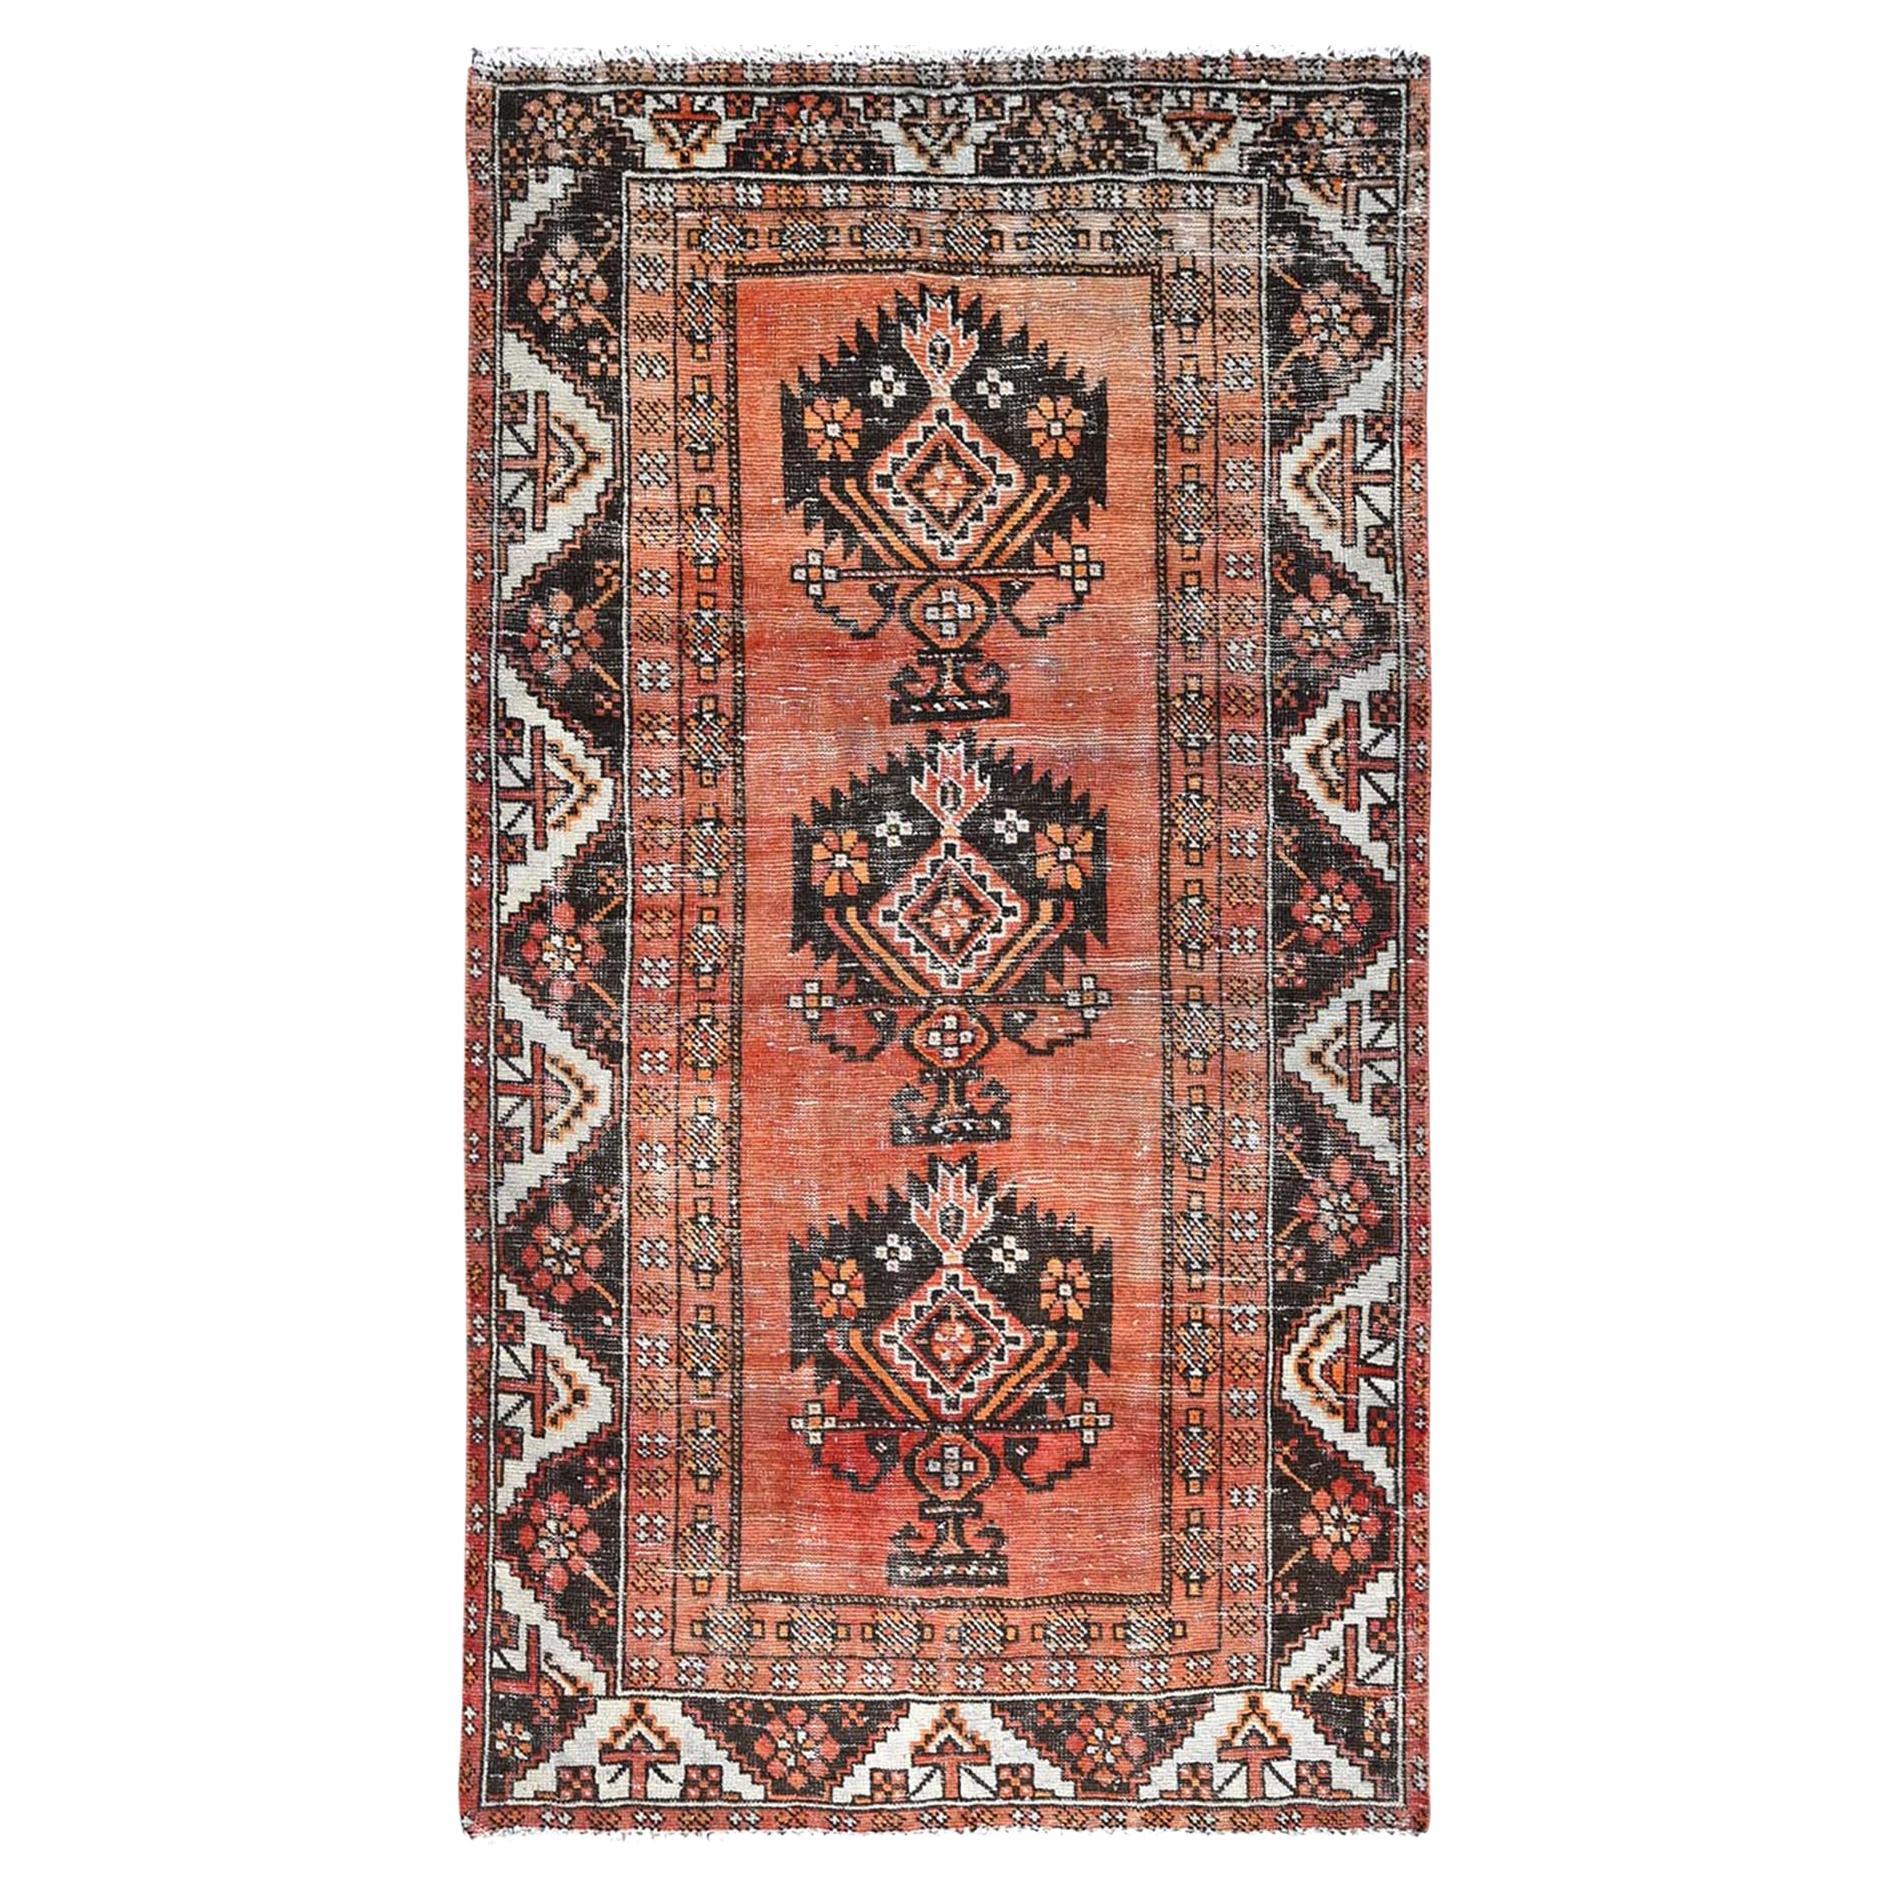 Brown Old Abrash Persian Baluch Village Design Handgeknüpft Reine Wolle Läufer Teppich